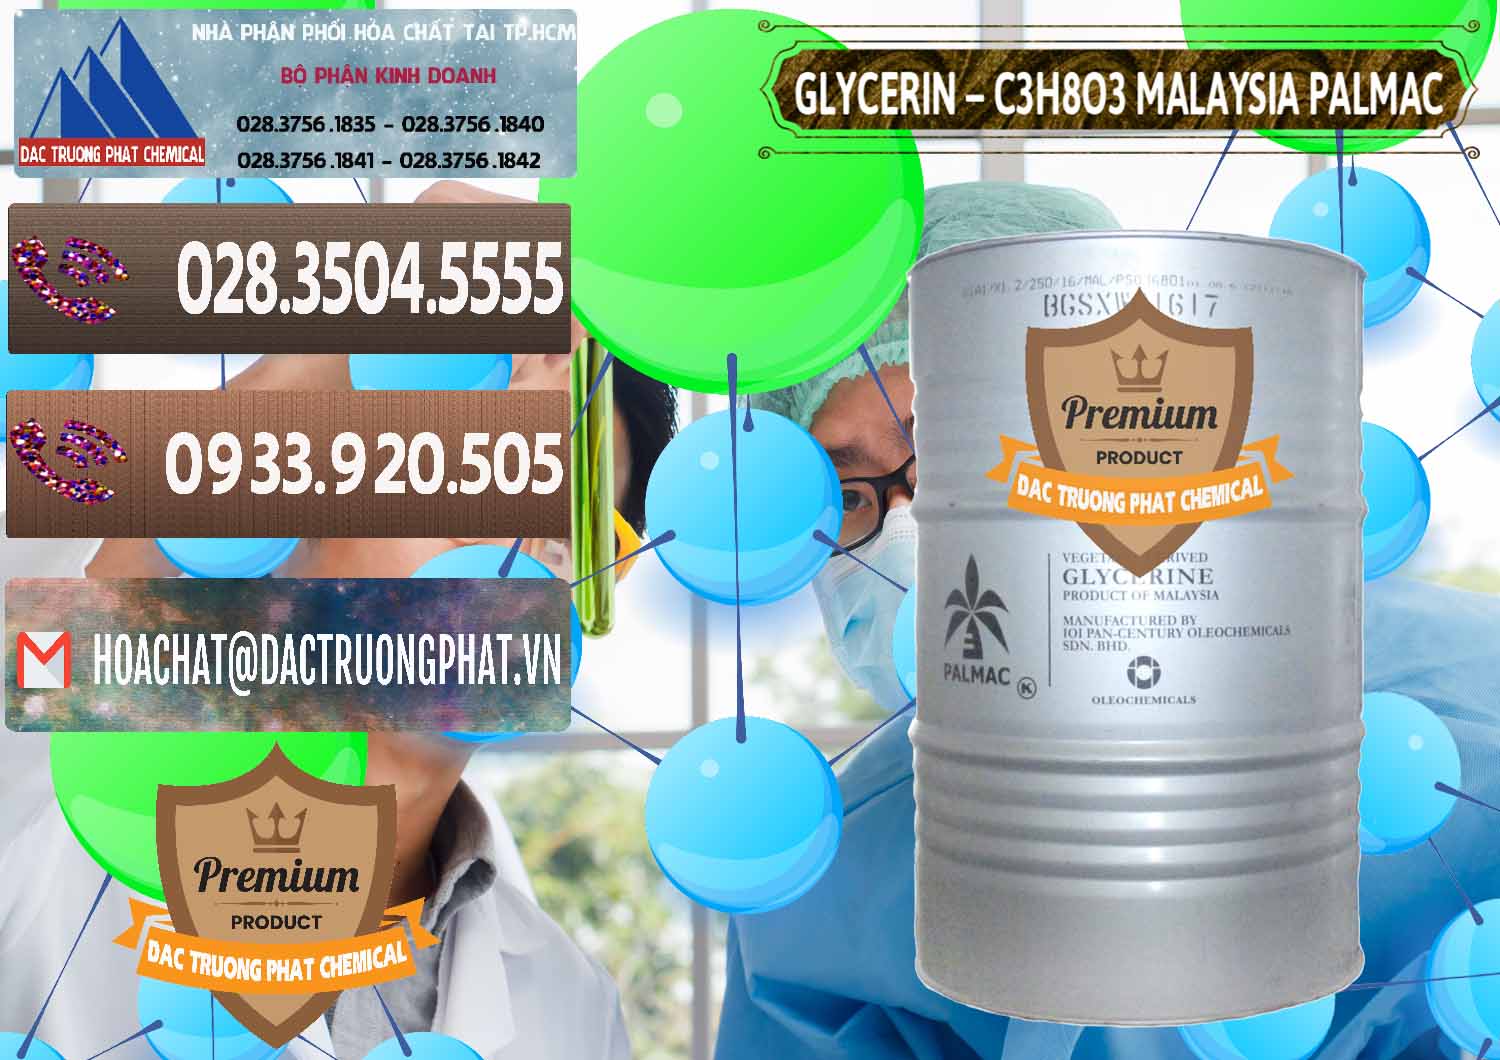 Cty cung cấp & bán Glycerin – C3H8O3 99.7% Malaysia Palmac - 0067 - Nơi nhập khẩu - phân phối hóa chất tại TP.HCM - hoachatviet.net